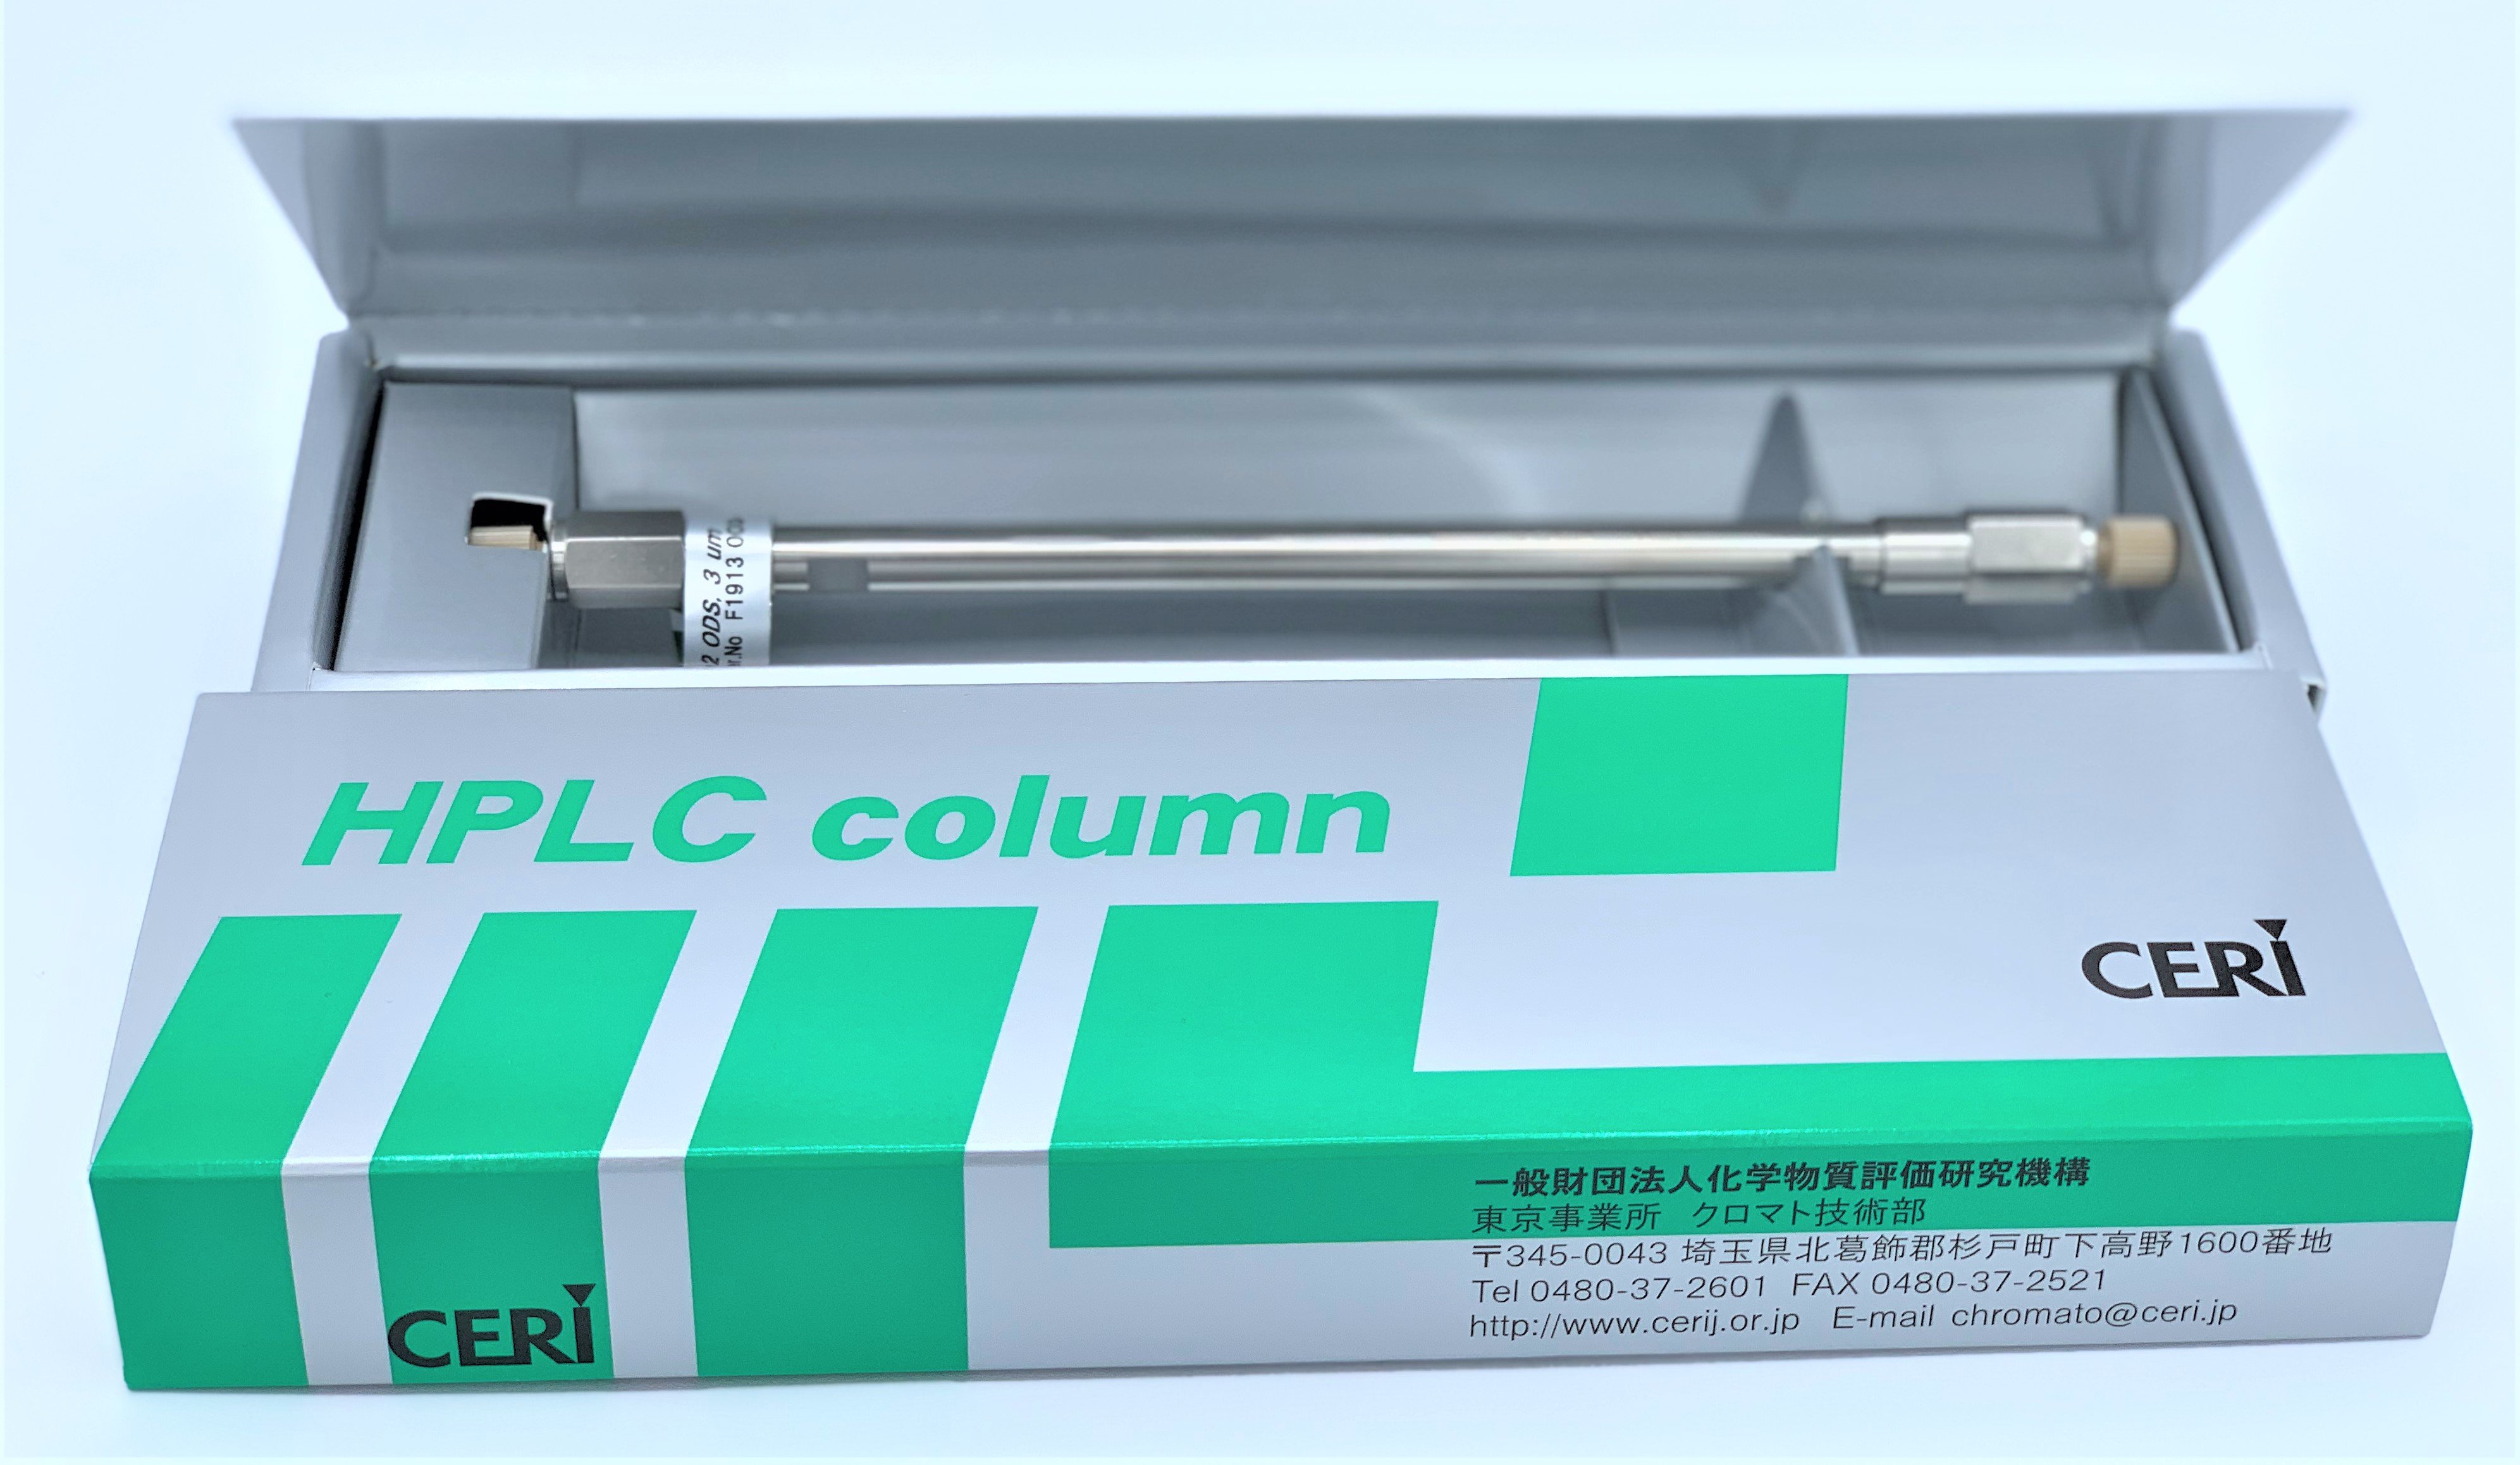 CERI 721070 L-column2 ODS C18 Octadecyl HPLC Column, 4.6mm x 150mm, 3μm Particle Size